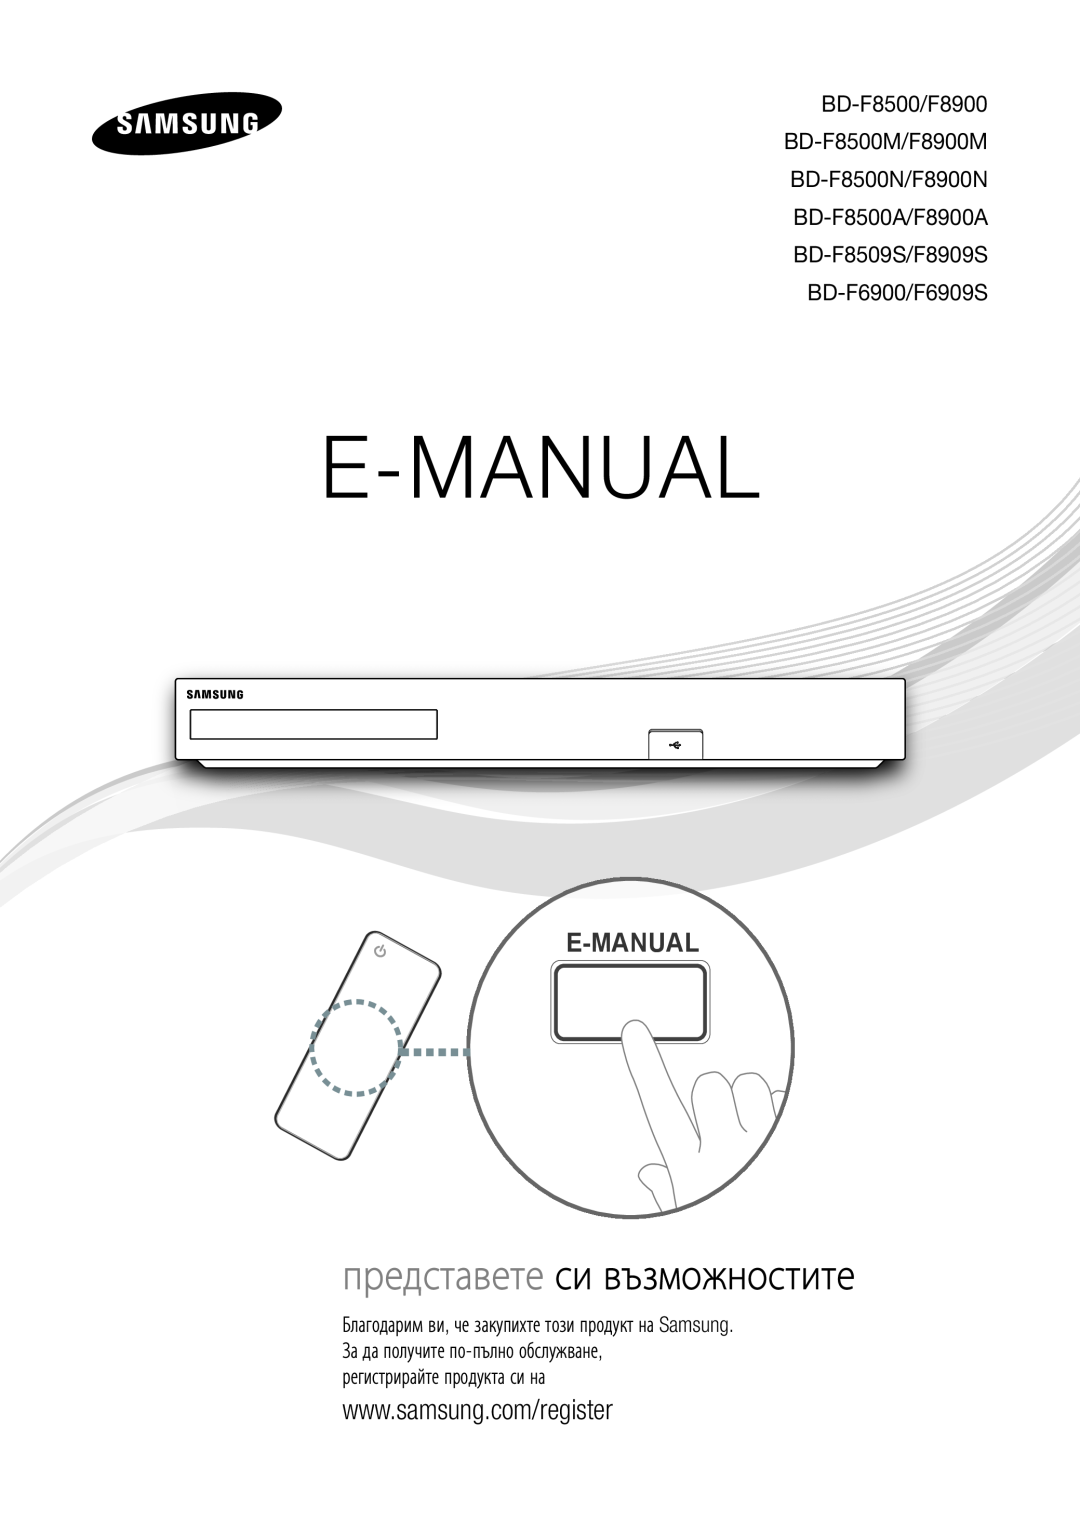 Samsung BD-F6900/EN, BD-F8500/EN manual E-Manual, представете си възможностите, BD-F8509S/F8909S BD-F6900/F6909S 